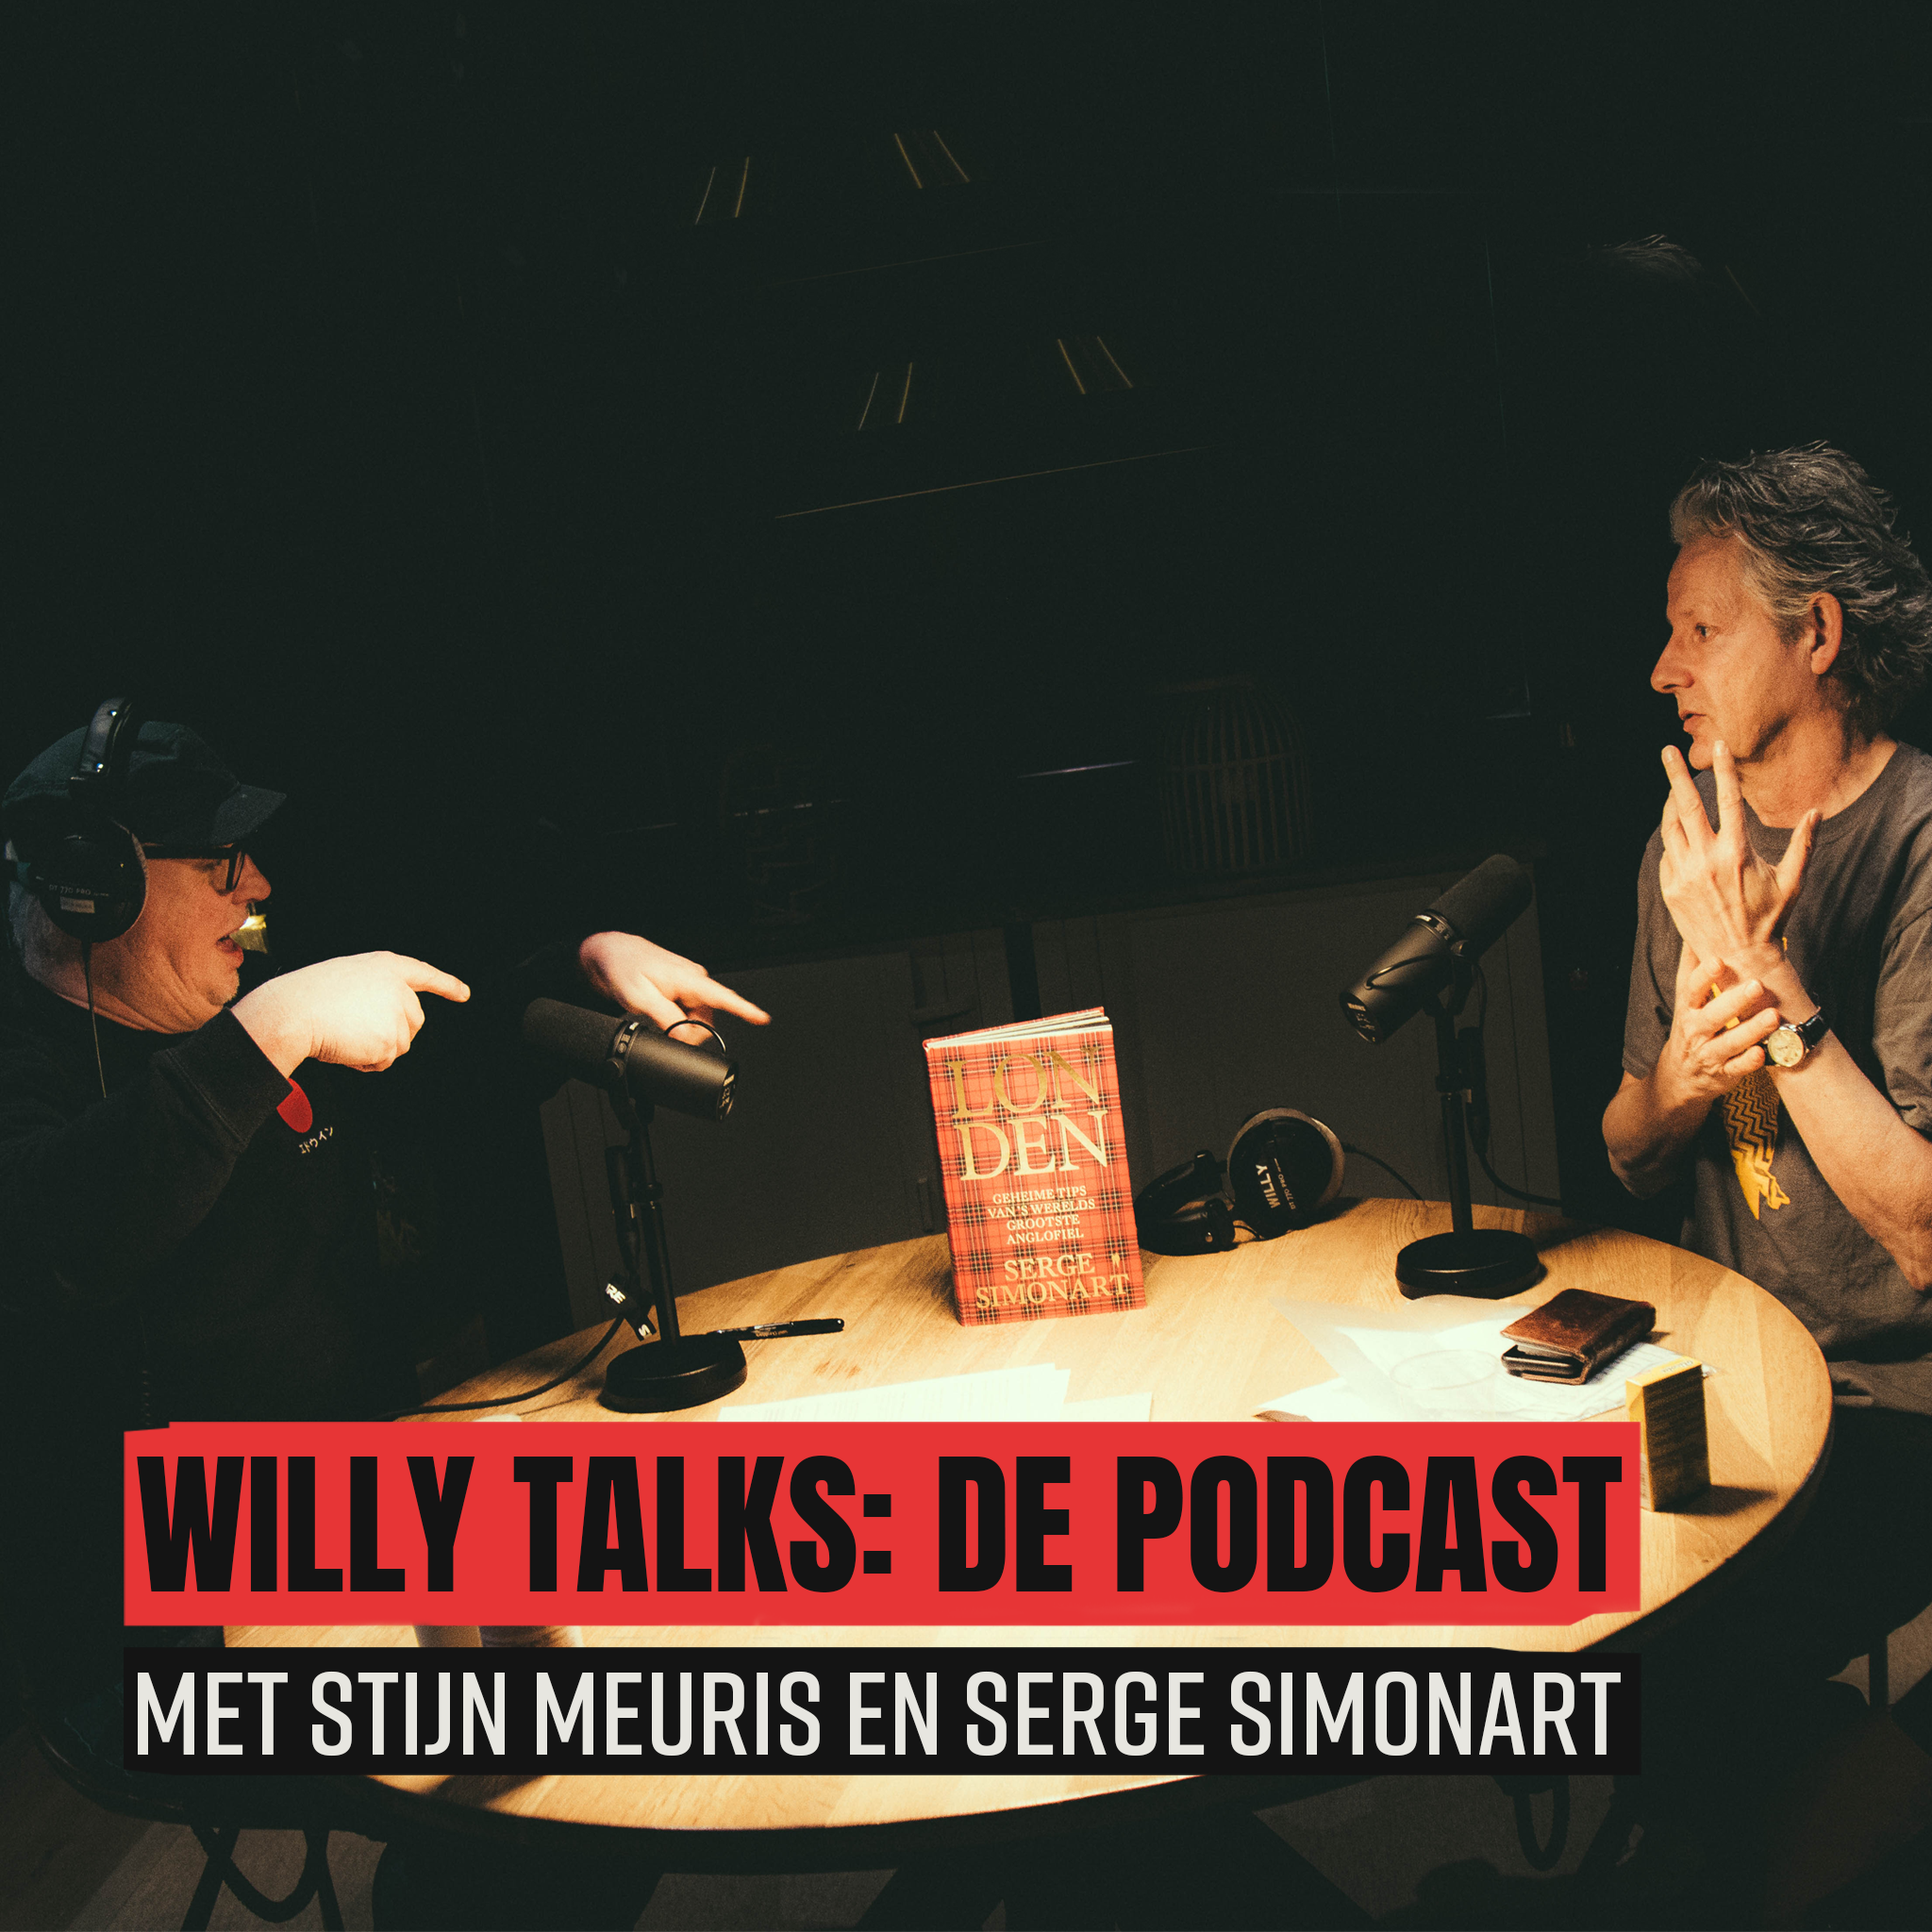 Willy talks  de podcast met serge simonart en stijn meuris